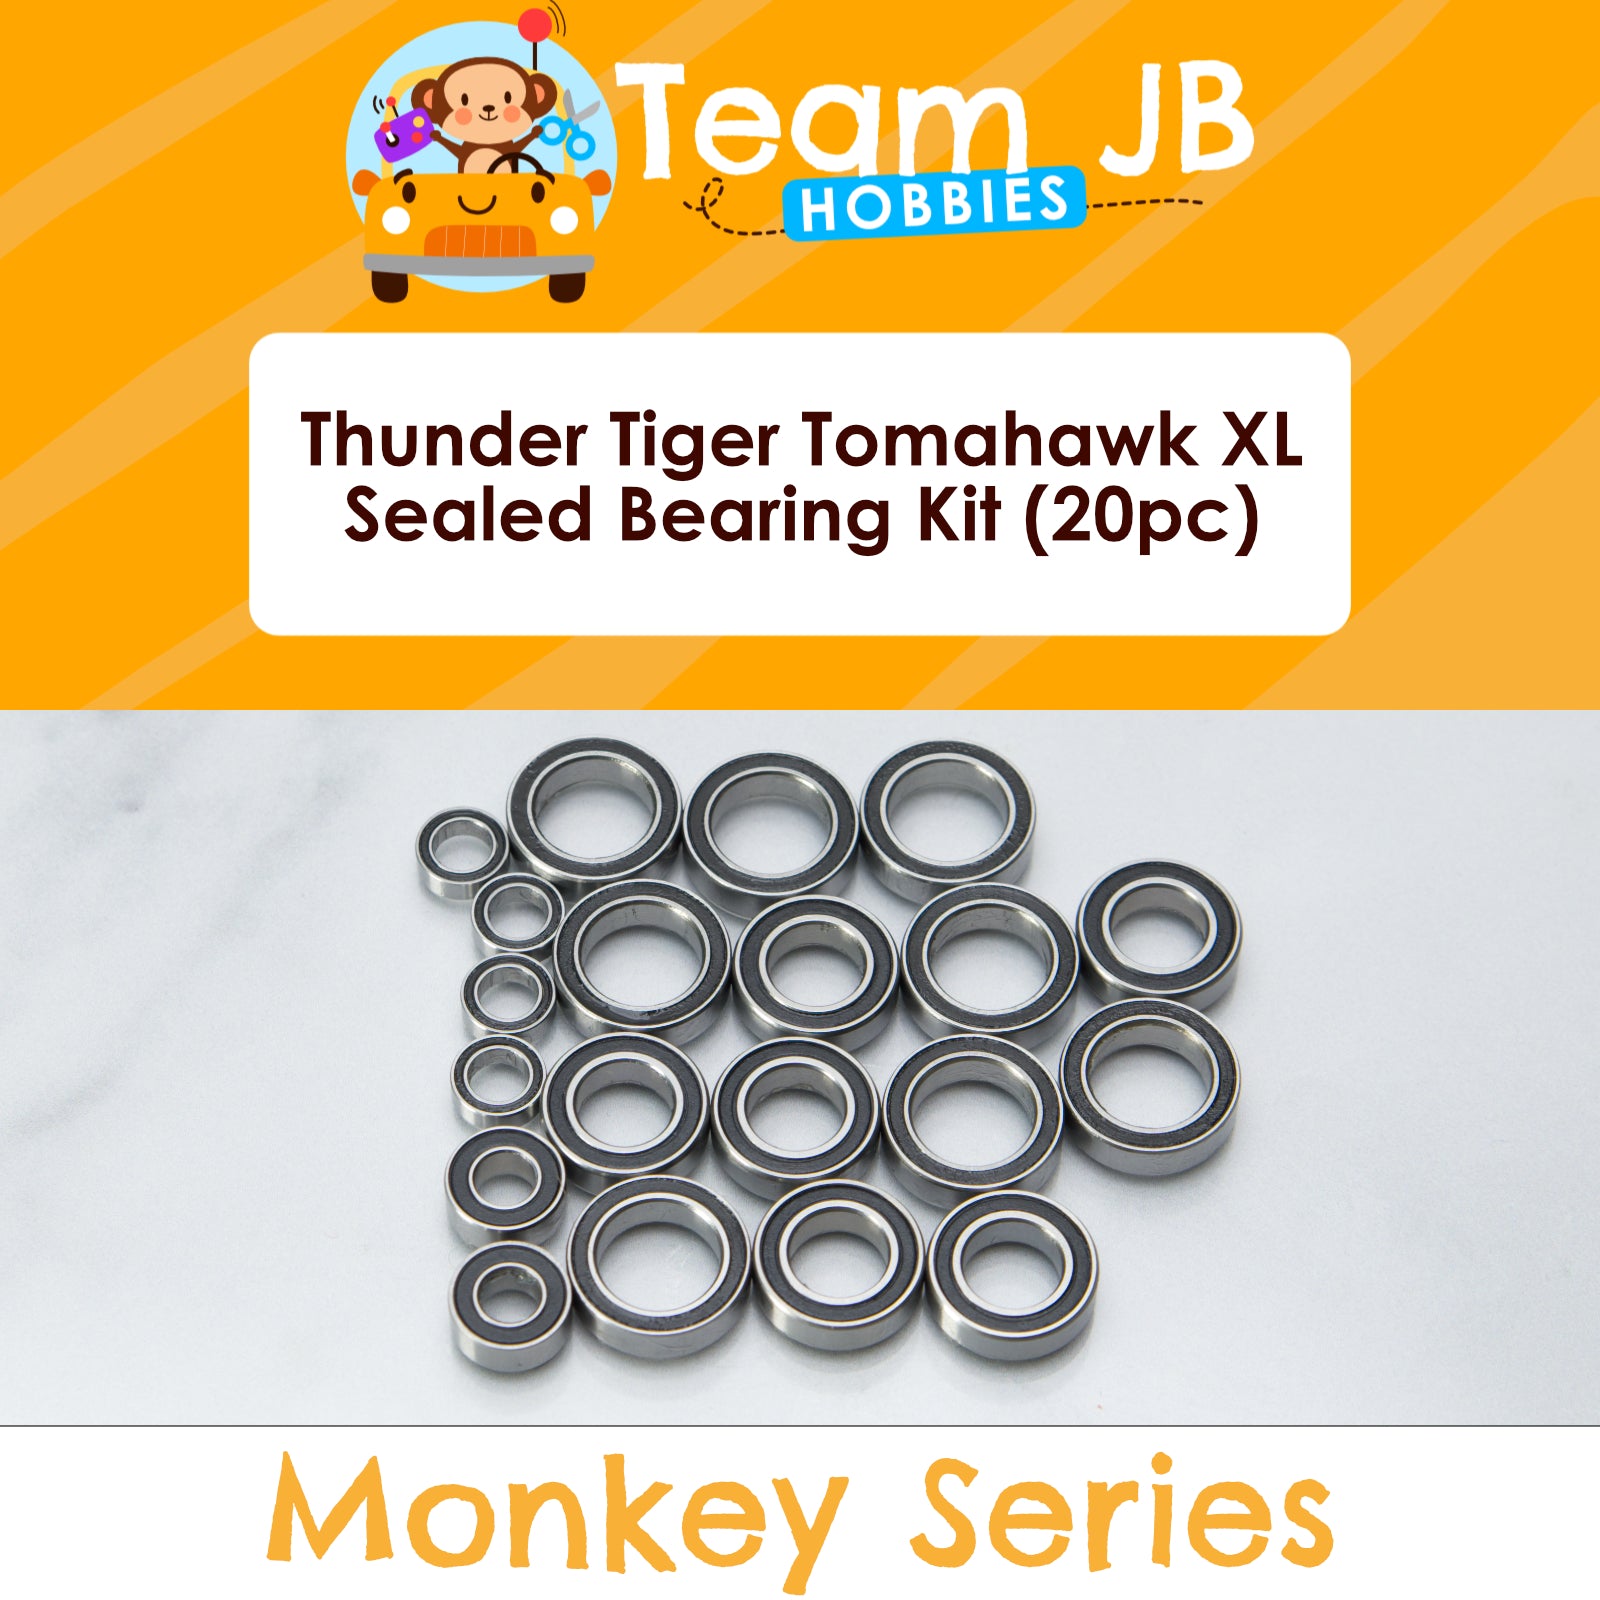 Thunder Tiger Tomahawk XL - Sealed Bearing Kit